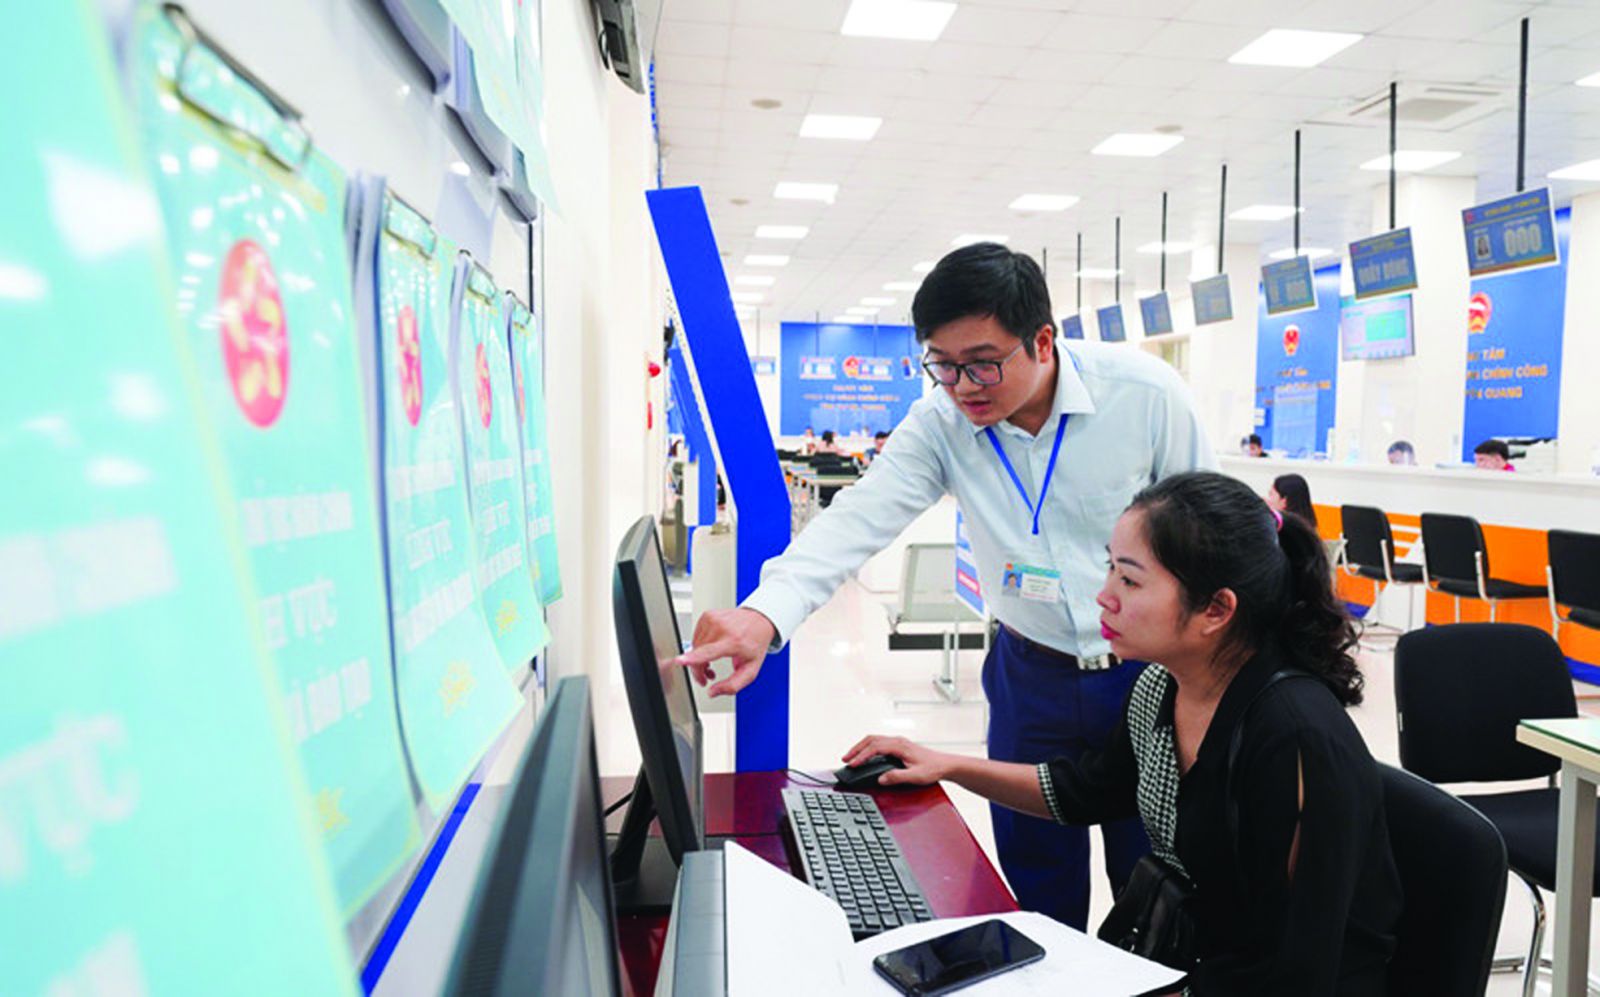  Hướng dẫn người dân cách làm thủ tục online tại Trung tâm hành chính công Tuyên Quang 